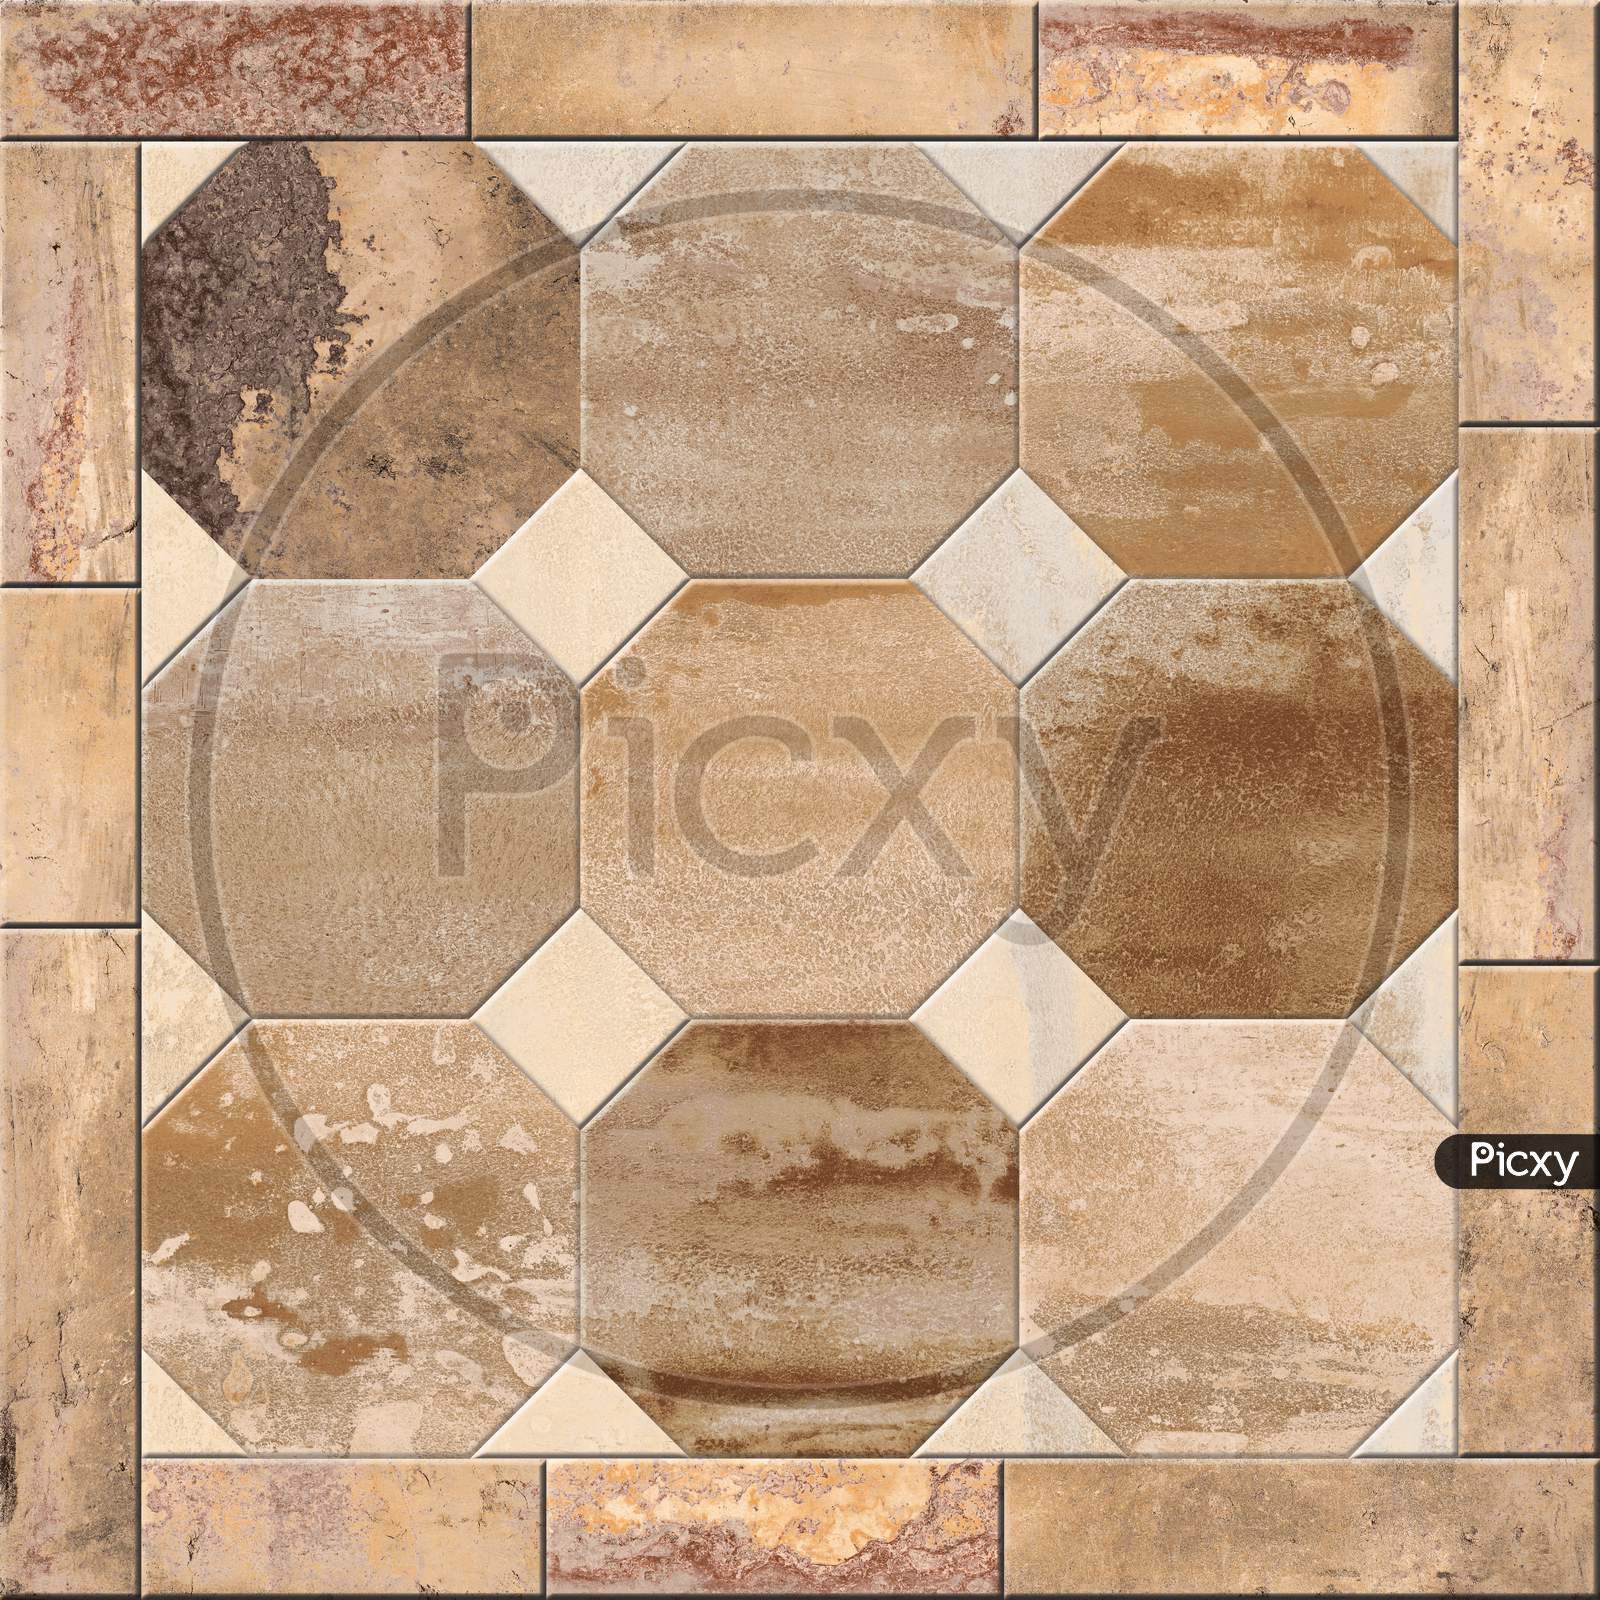 Hexagonal Pattern Stone Wall Decor Mosaic Background